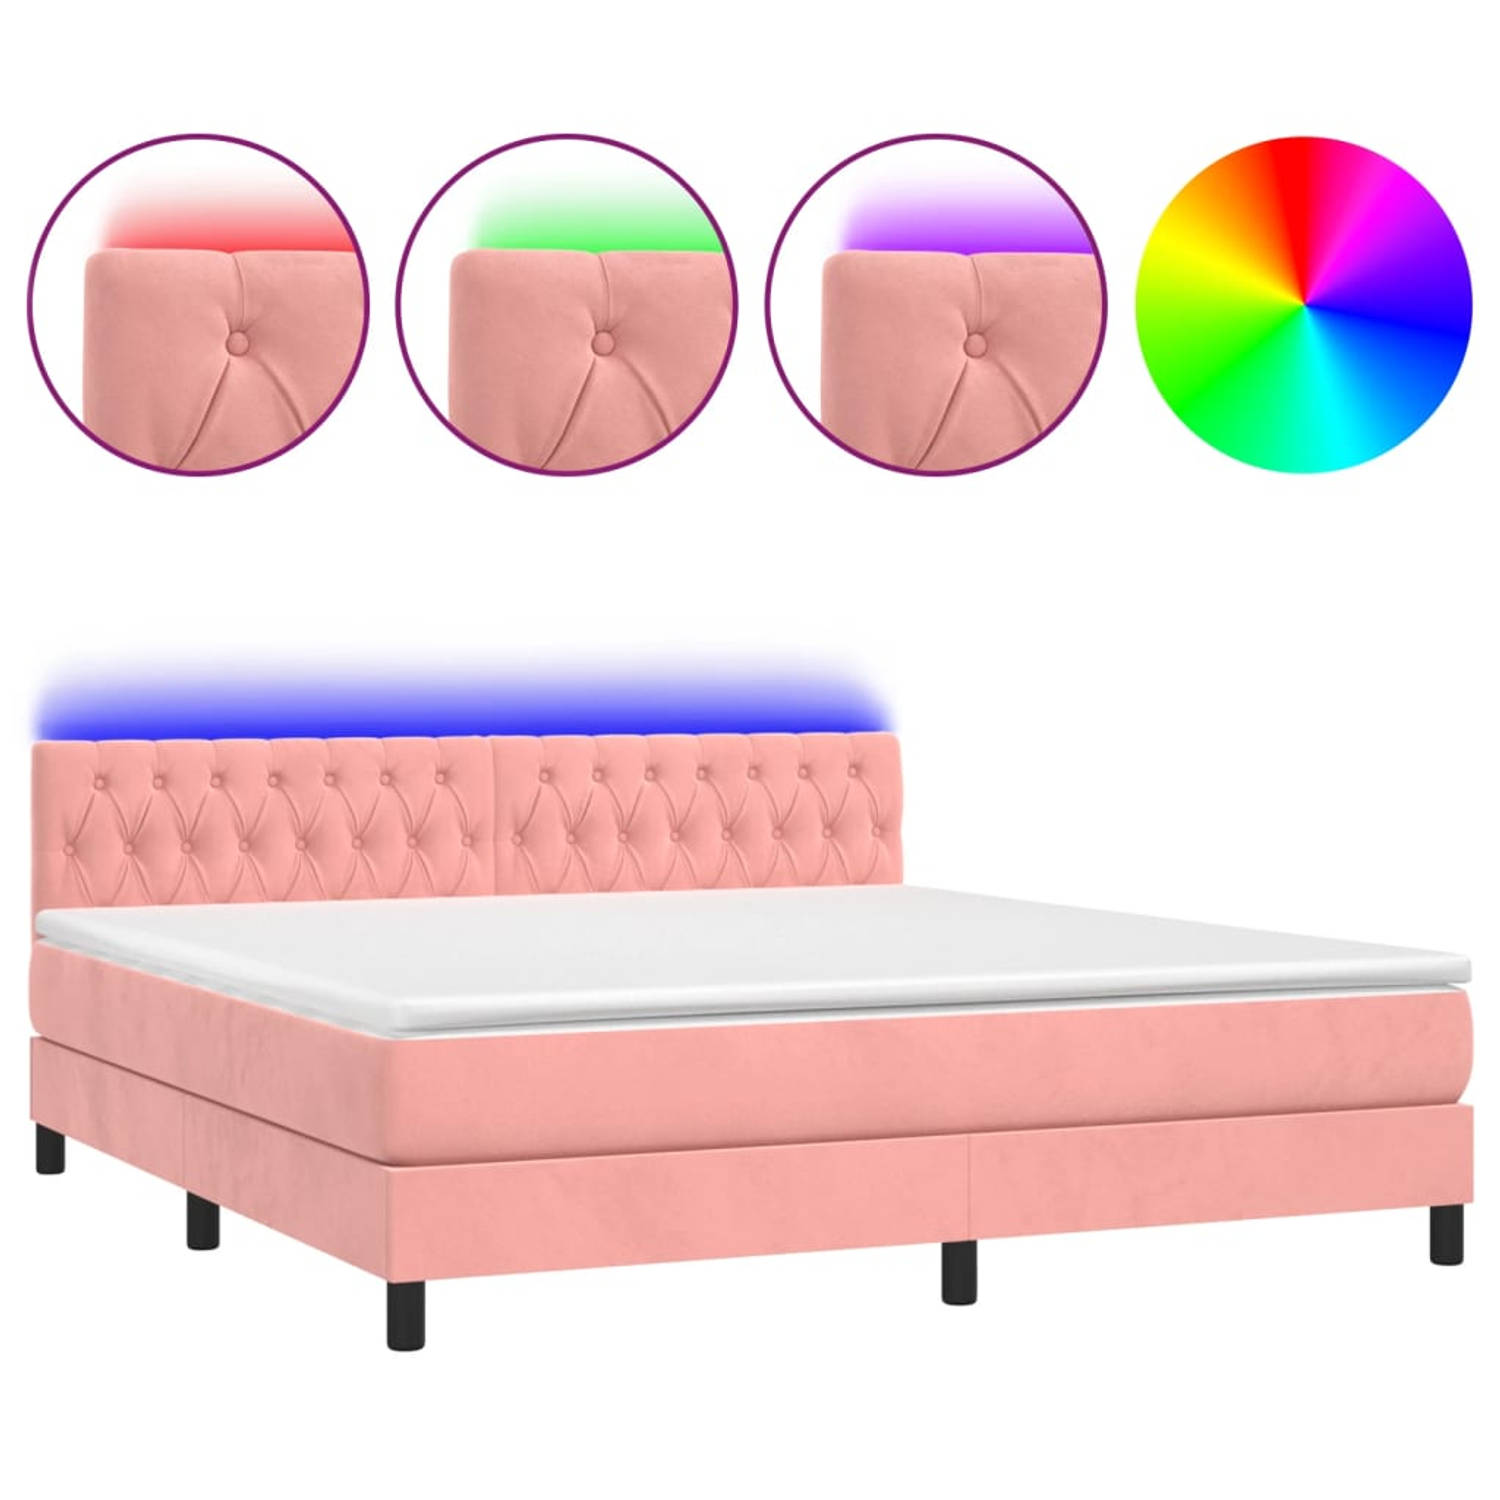 The Living Store Bed Roze Fluweel 203x180x78/88 cm - Pocketvering Matras - Huidvriendelijk Topmatras - Kleurrijke LED-verlichting